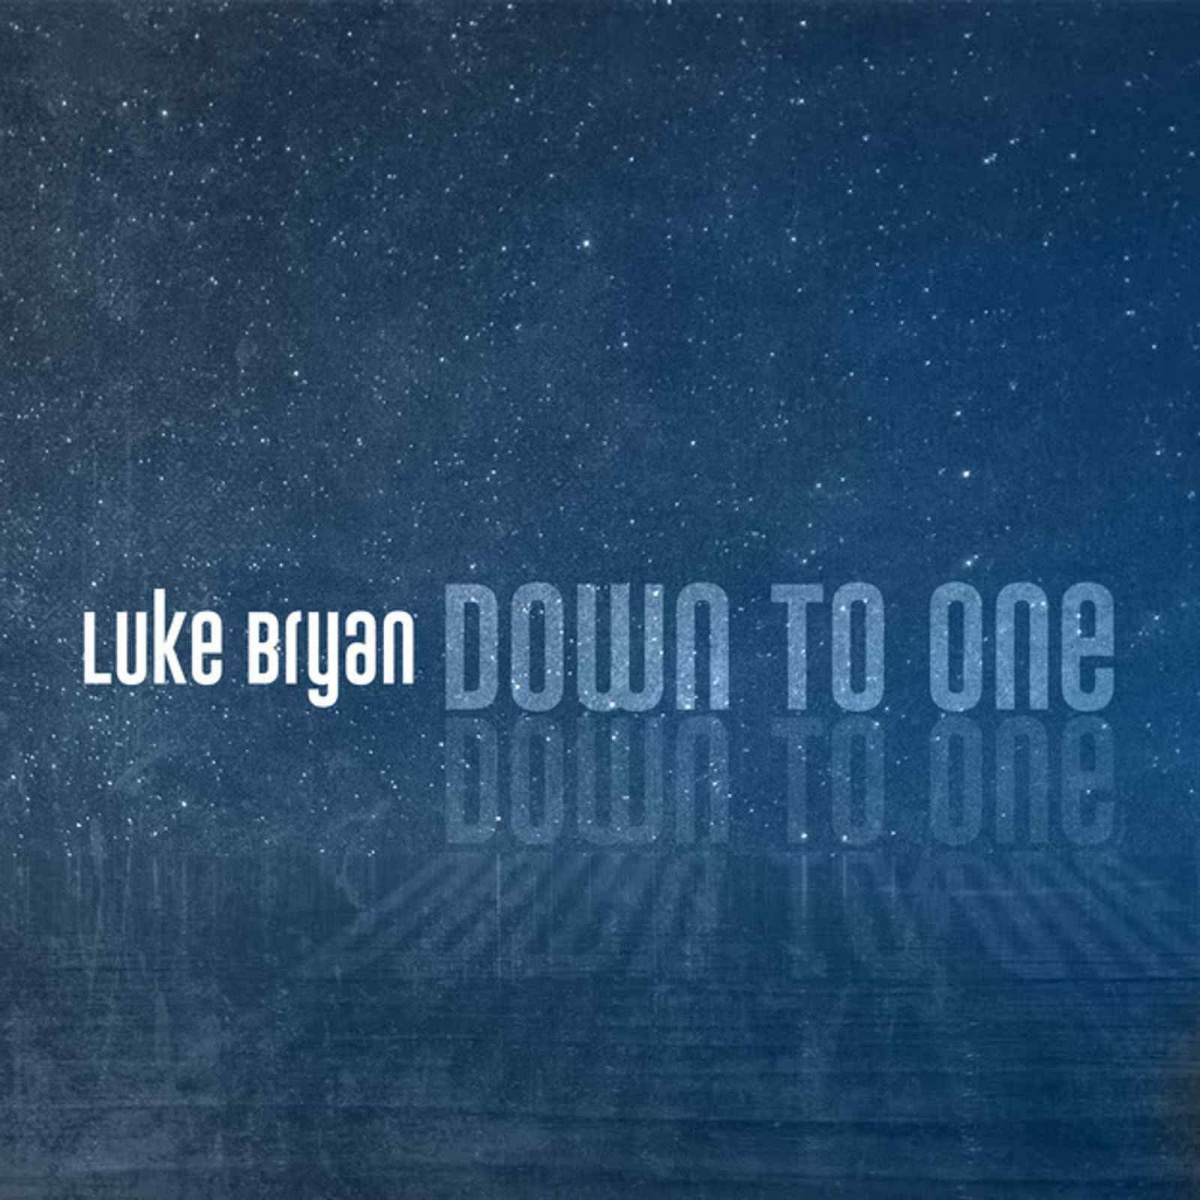 Luke Bryan - Down to One piano sheet music